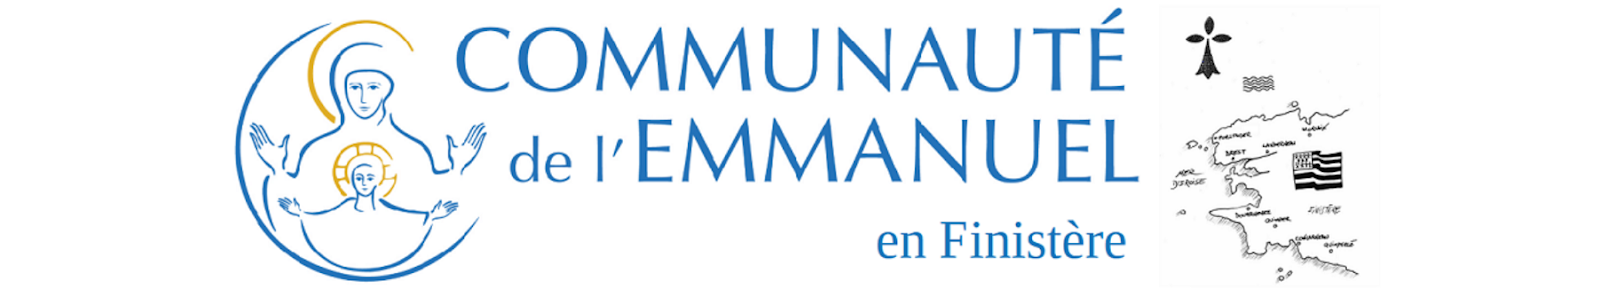 Communauté de l'Emmanuel en Finistère